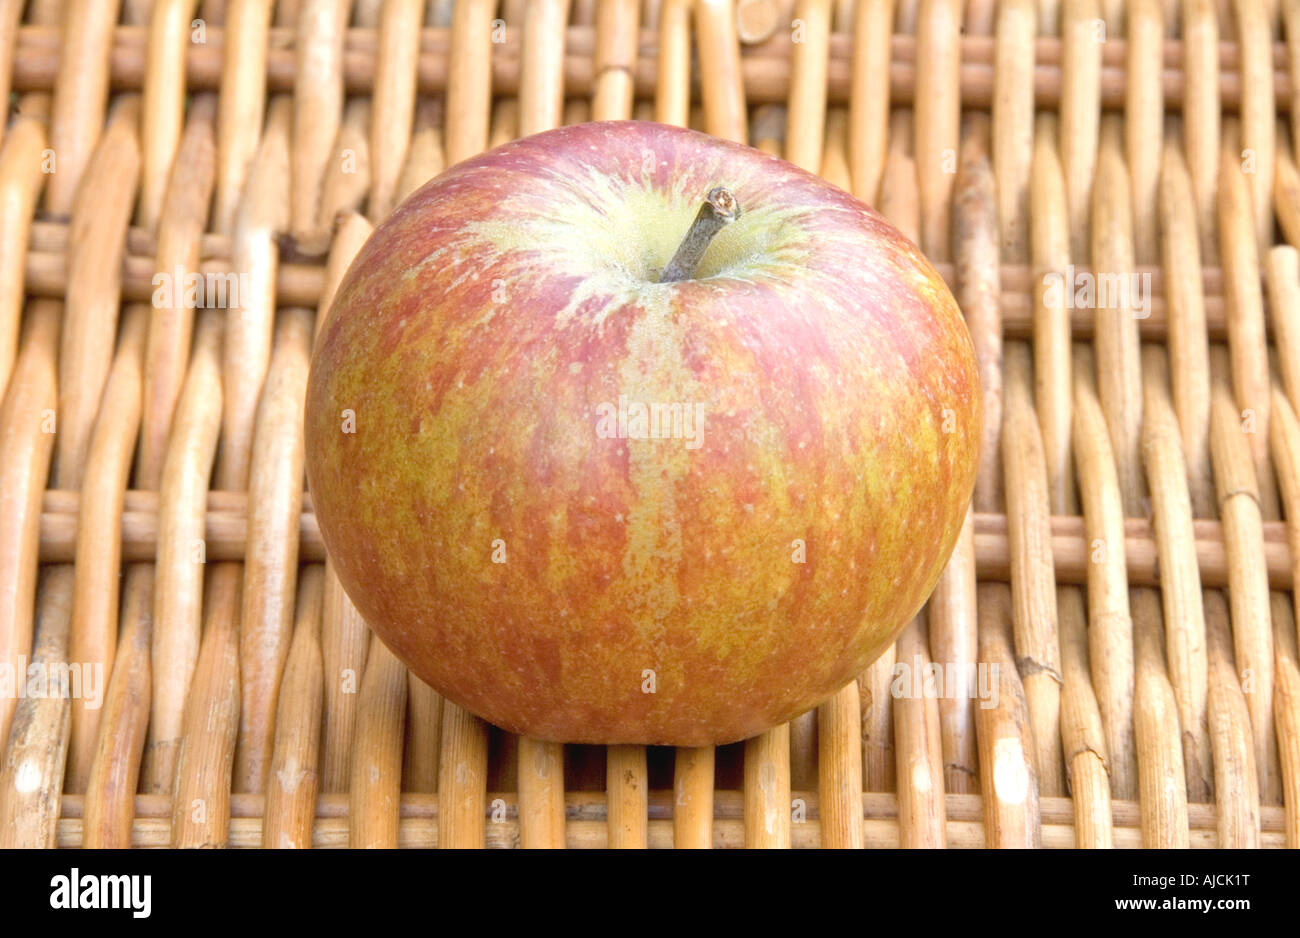 Cox s Orange Pippin apple Malus domestica on wicker basket Stock Photo